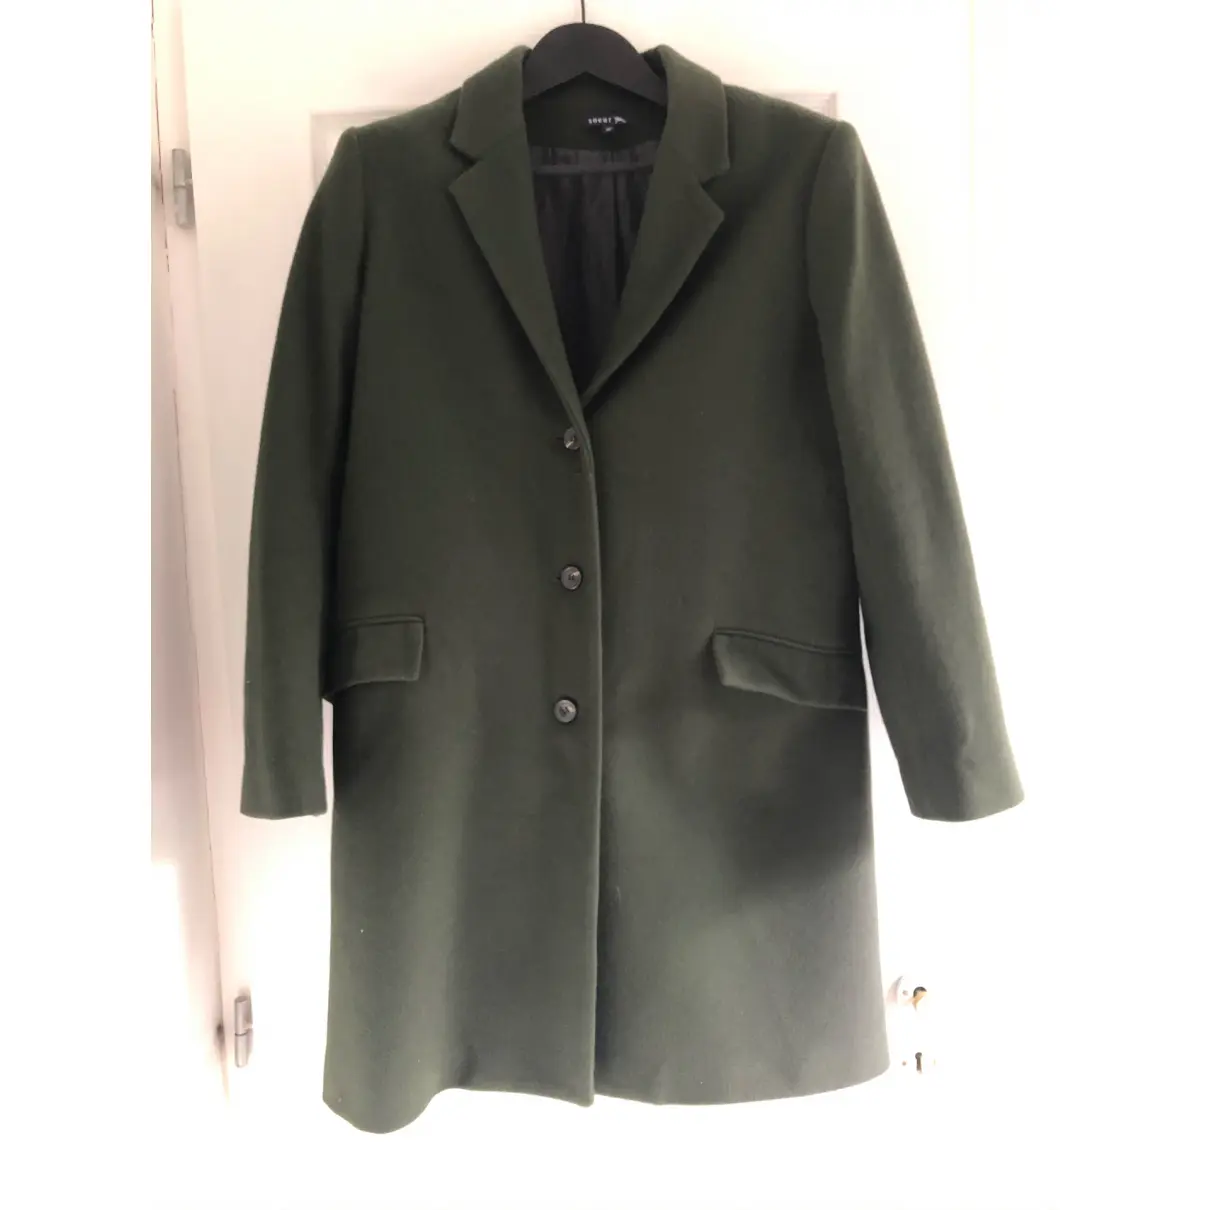 Buy Soeur Wool coat online